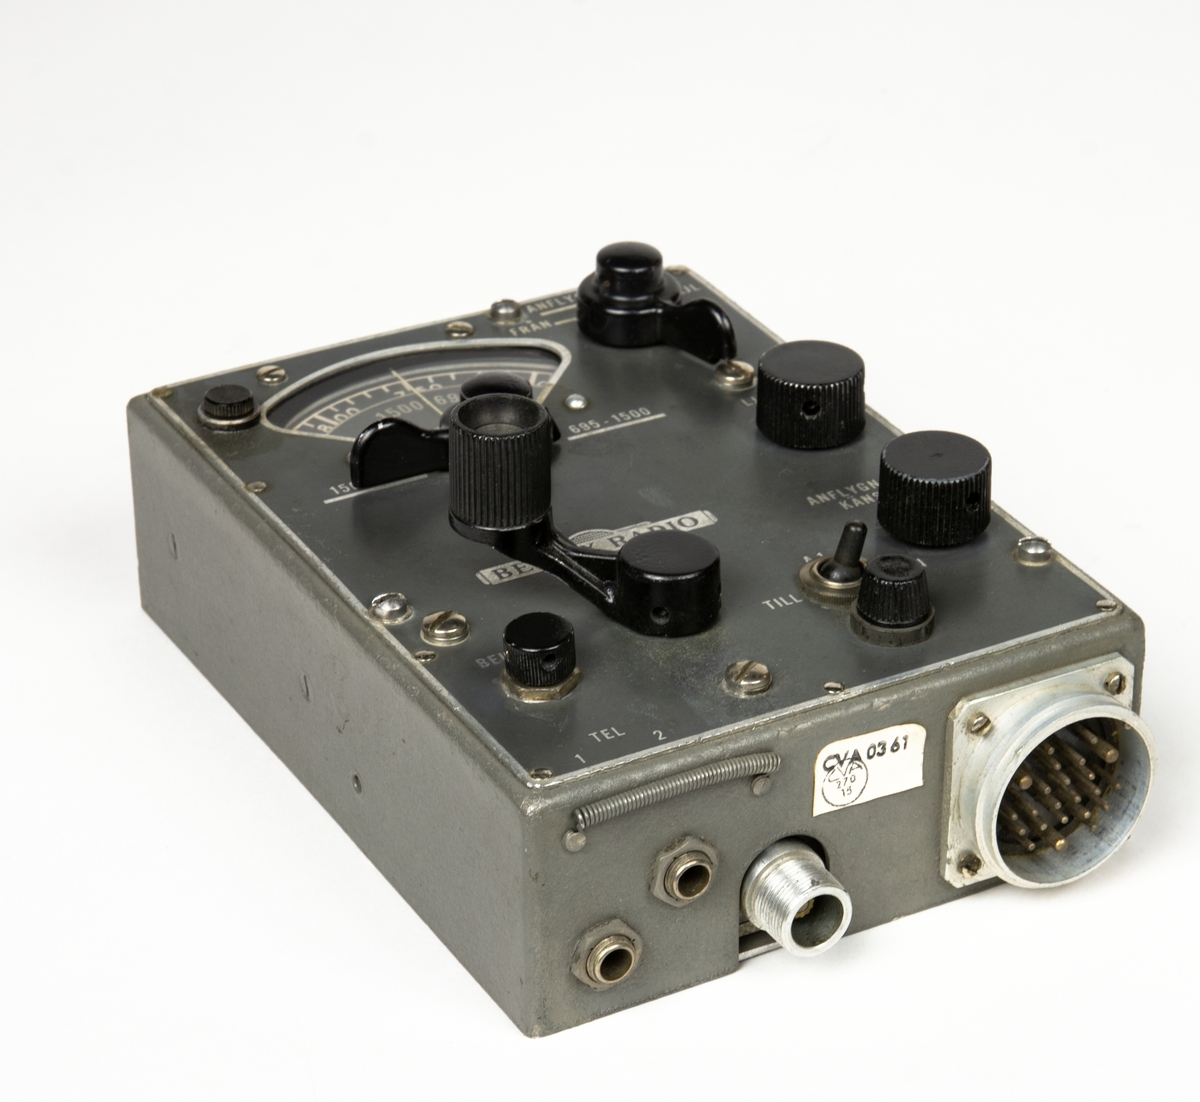 Manöverapparat Frp2

Betjäningsapparat Radiokompass MN-26A